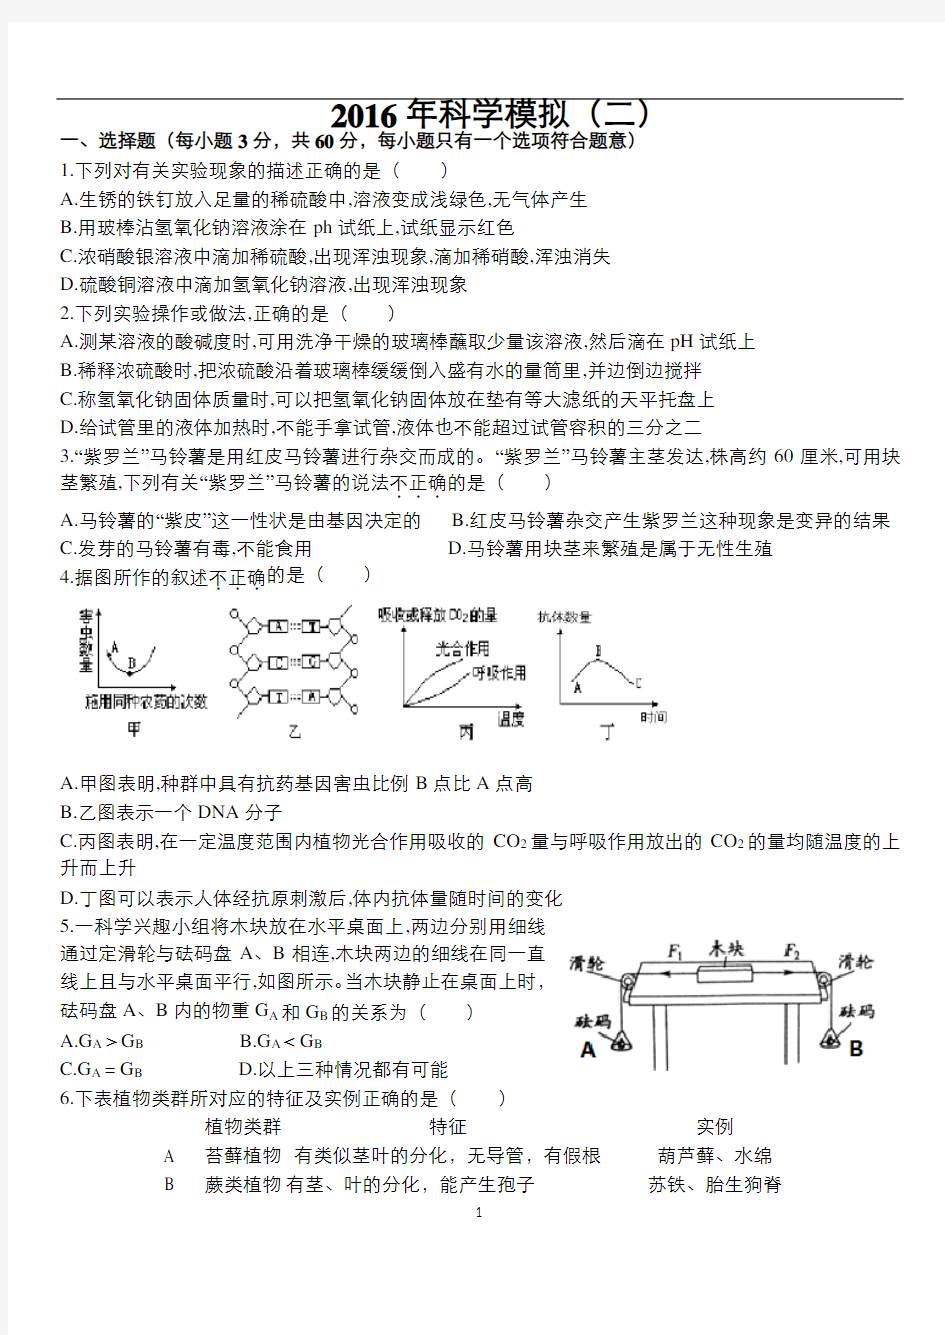 2016杭州中考模拟科学卷猜题卷(含答案,稍难)分析